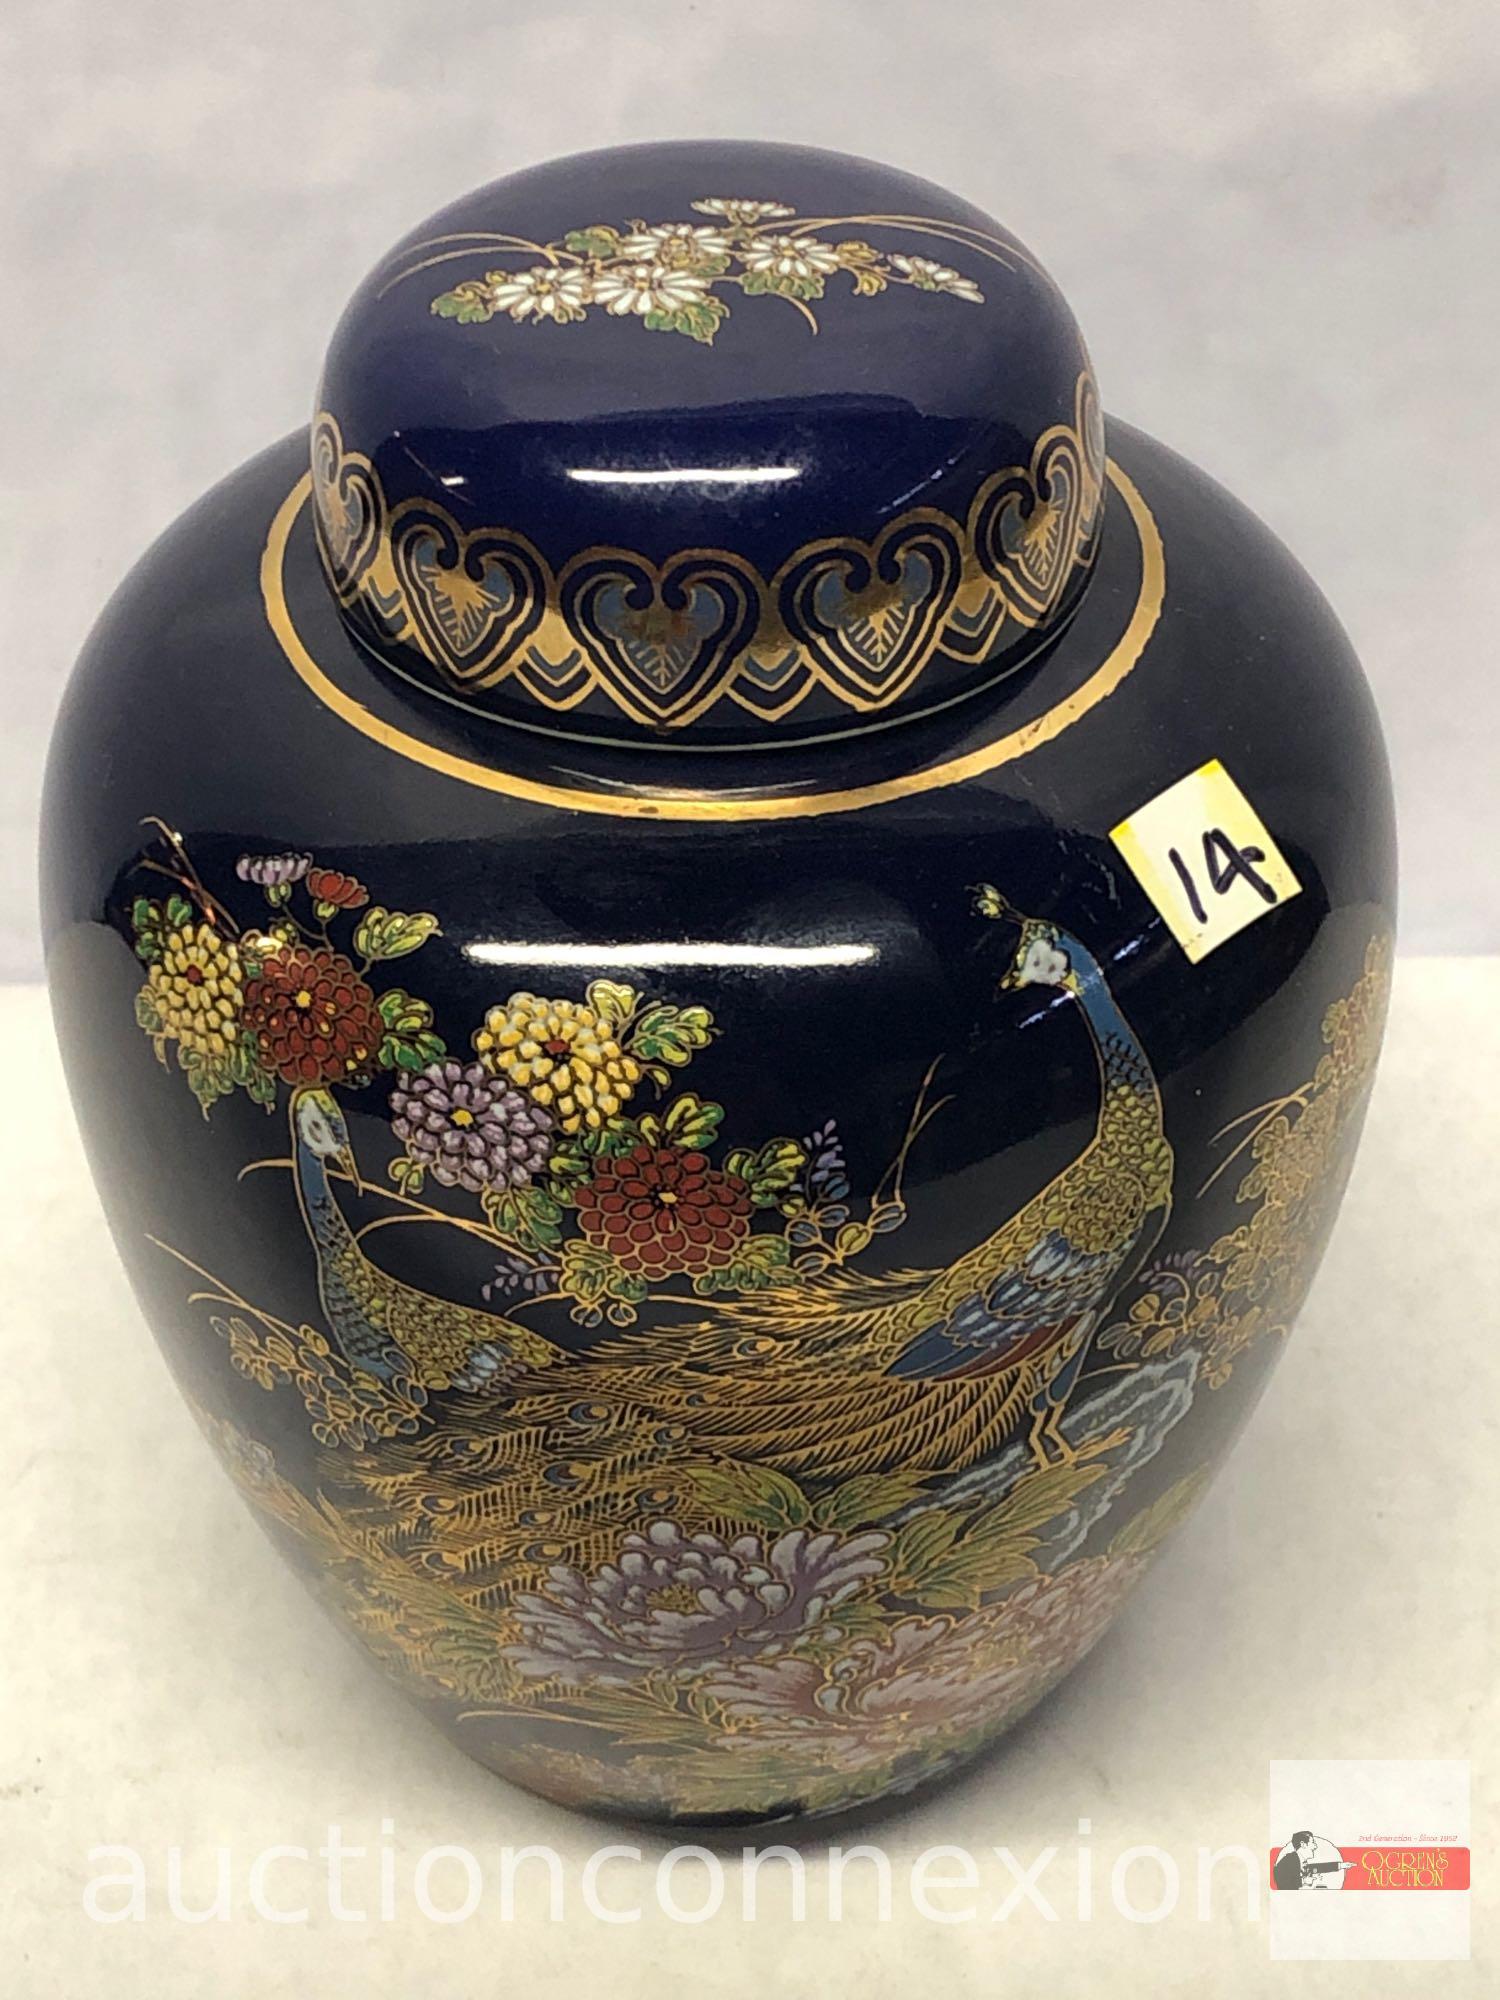 Ginger jar urn - Japanese, blue